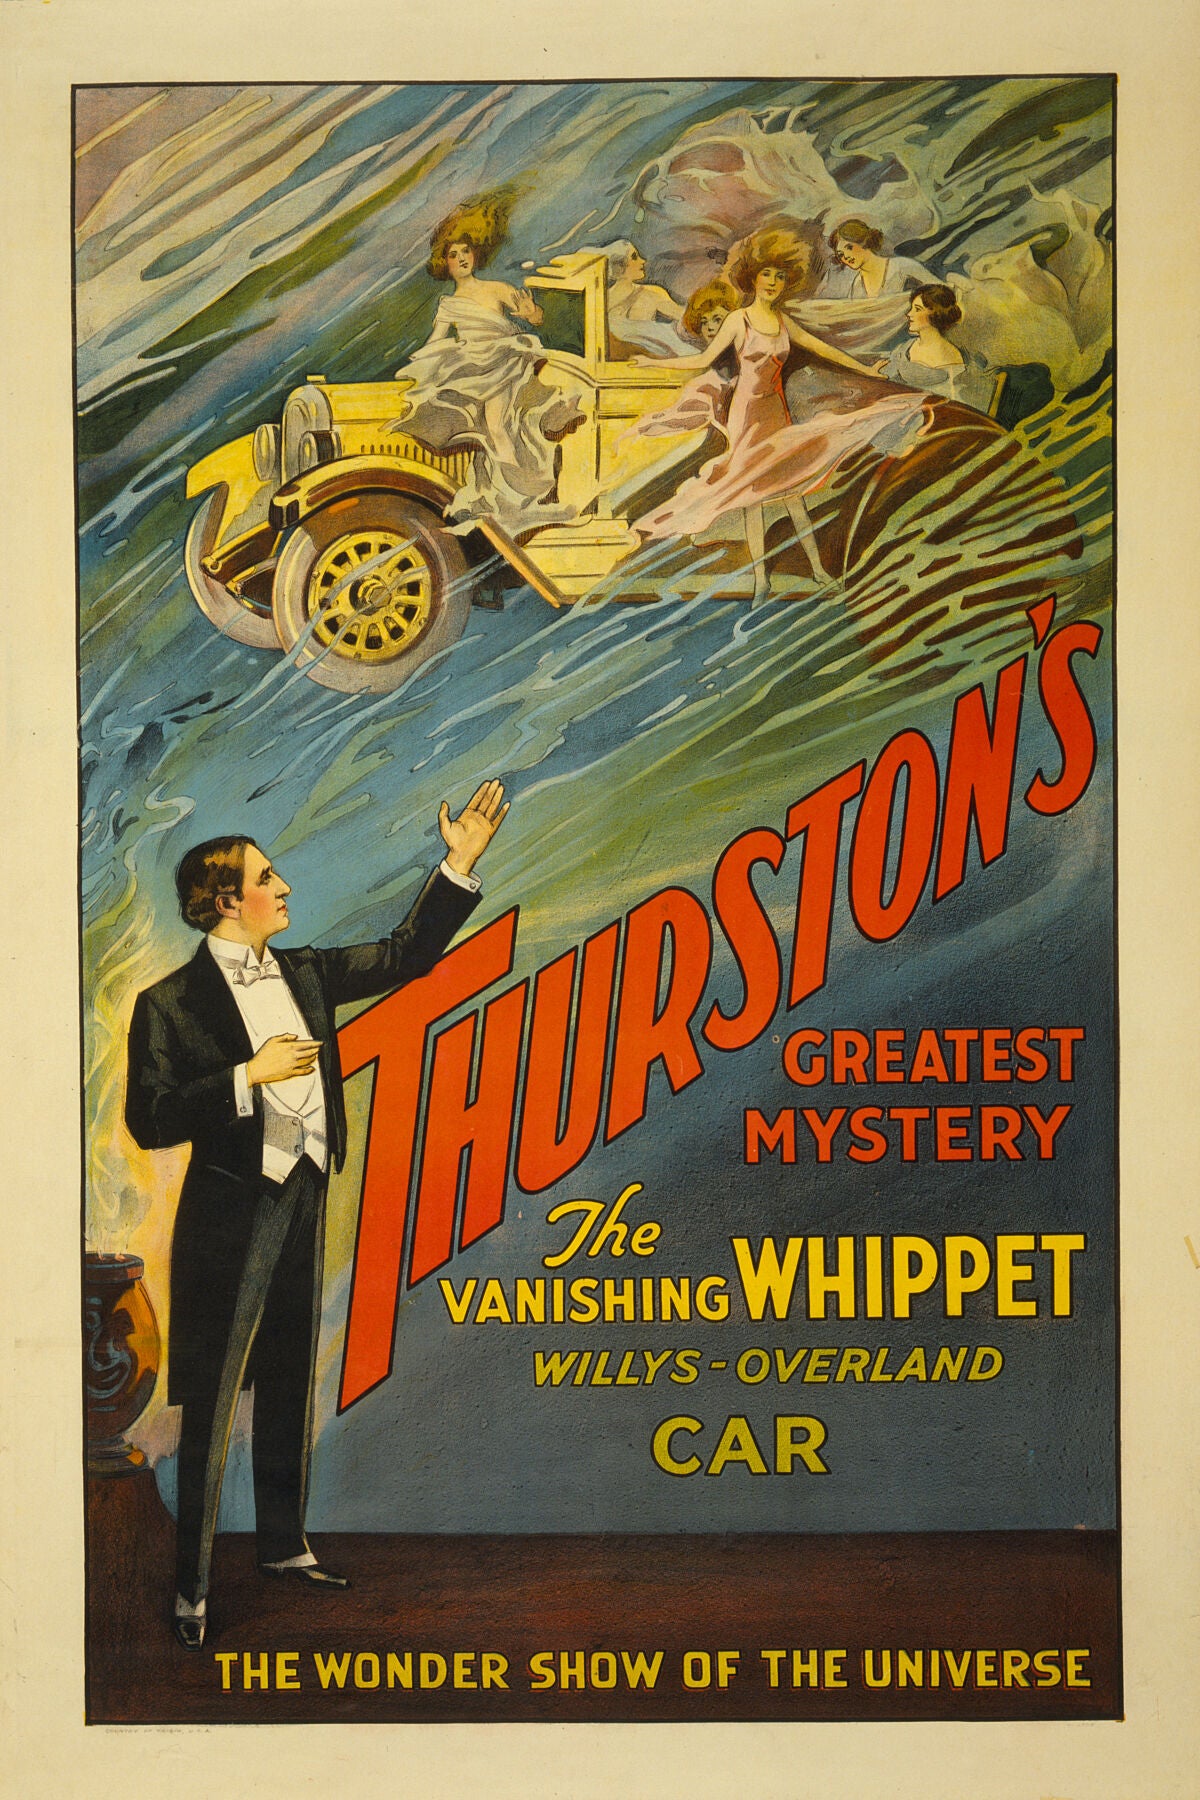 Thurston Overland Car - the Vanishing Whippet 1925